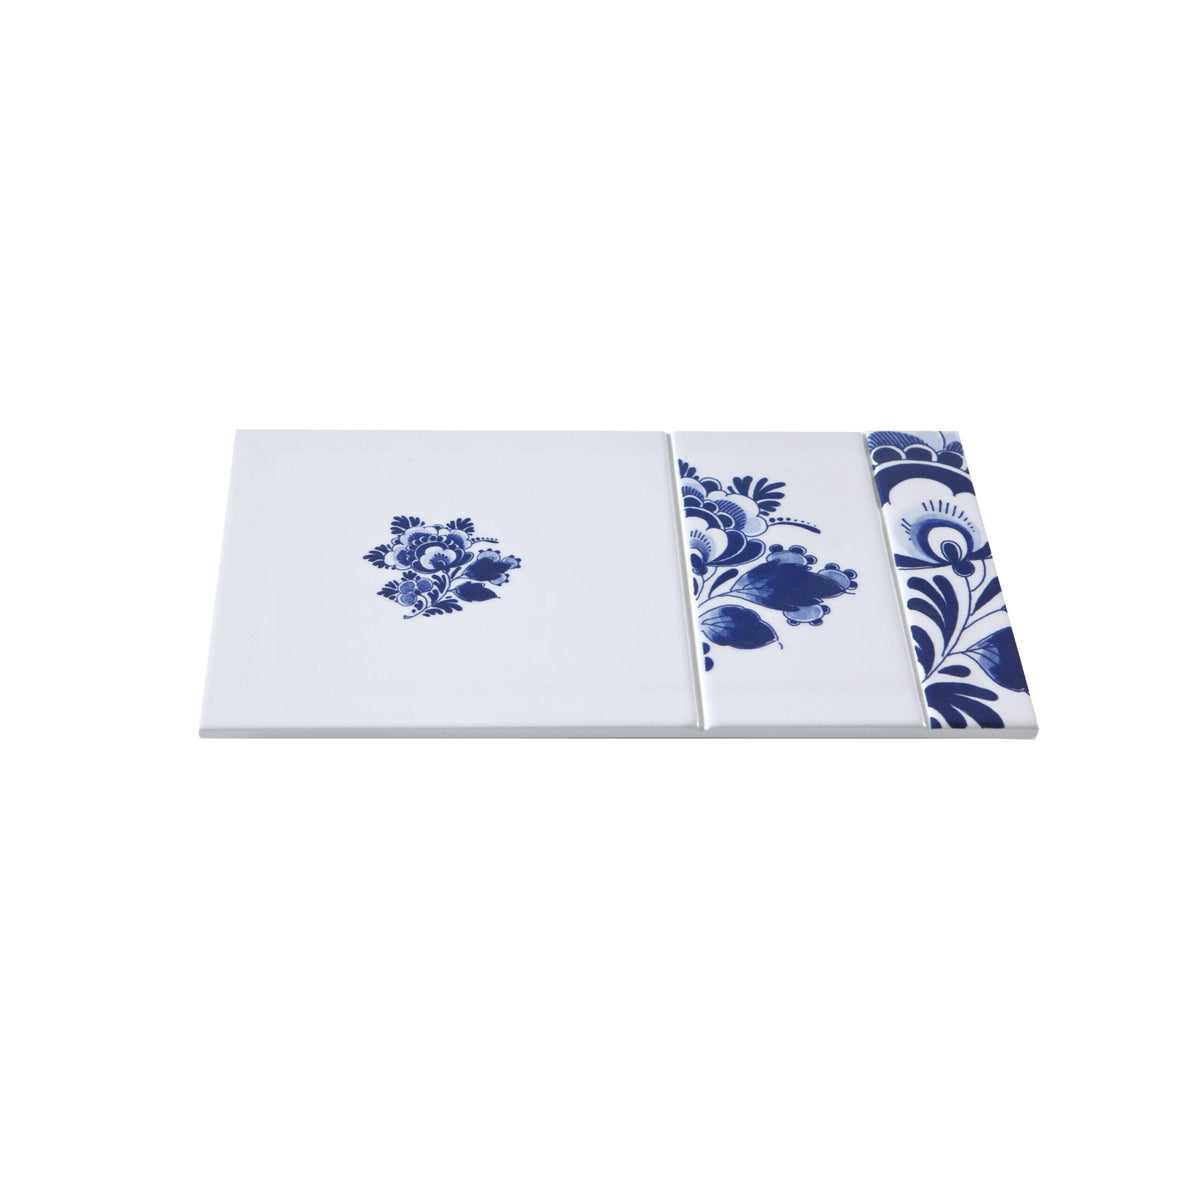 Versatile Plain - Blue D1653 Collection by Royal Delft